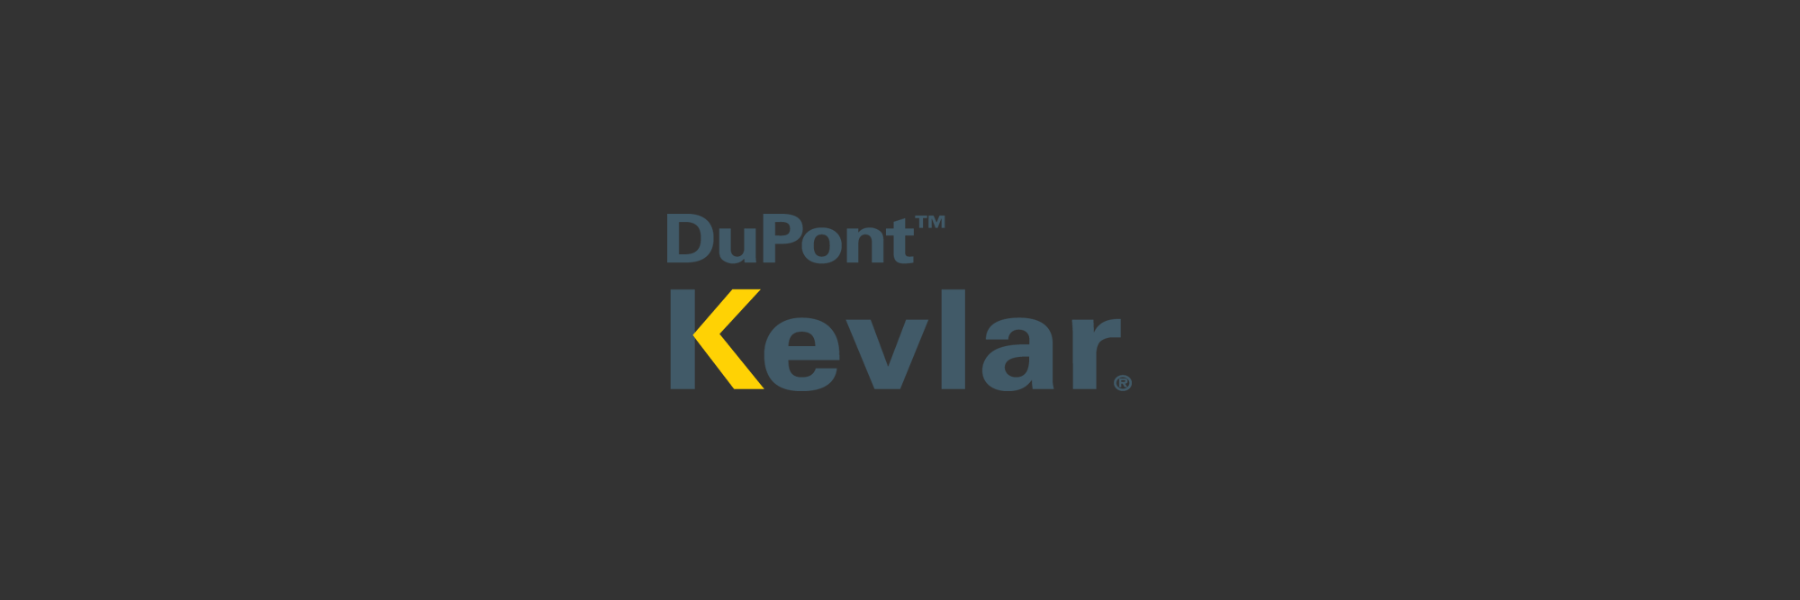 DuPont™ Kevlar®